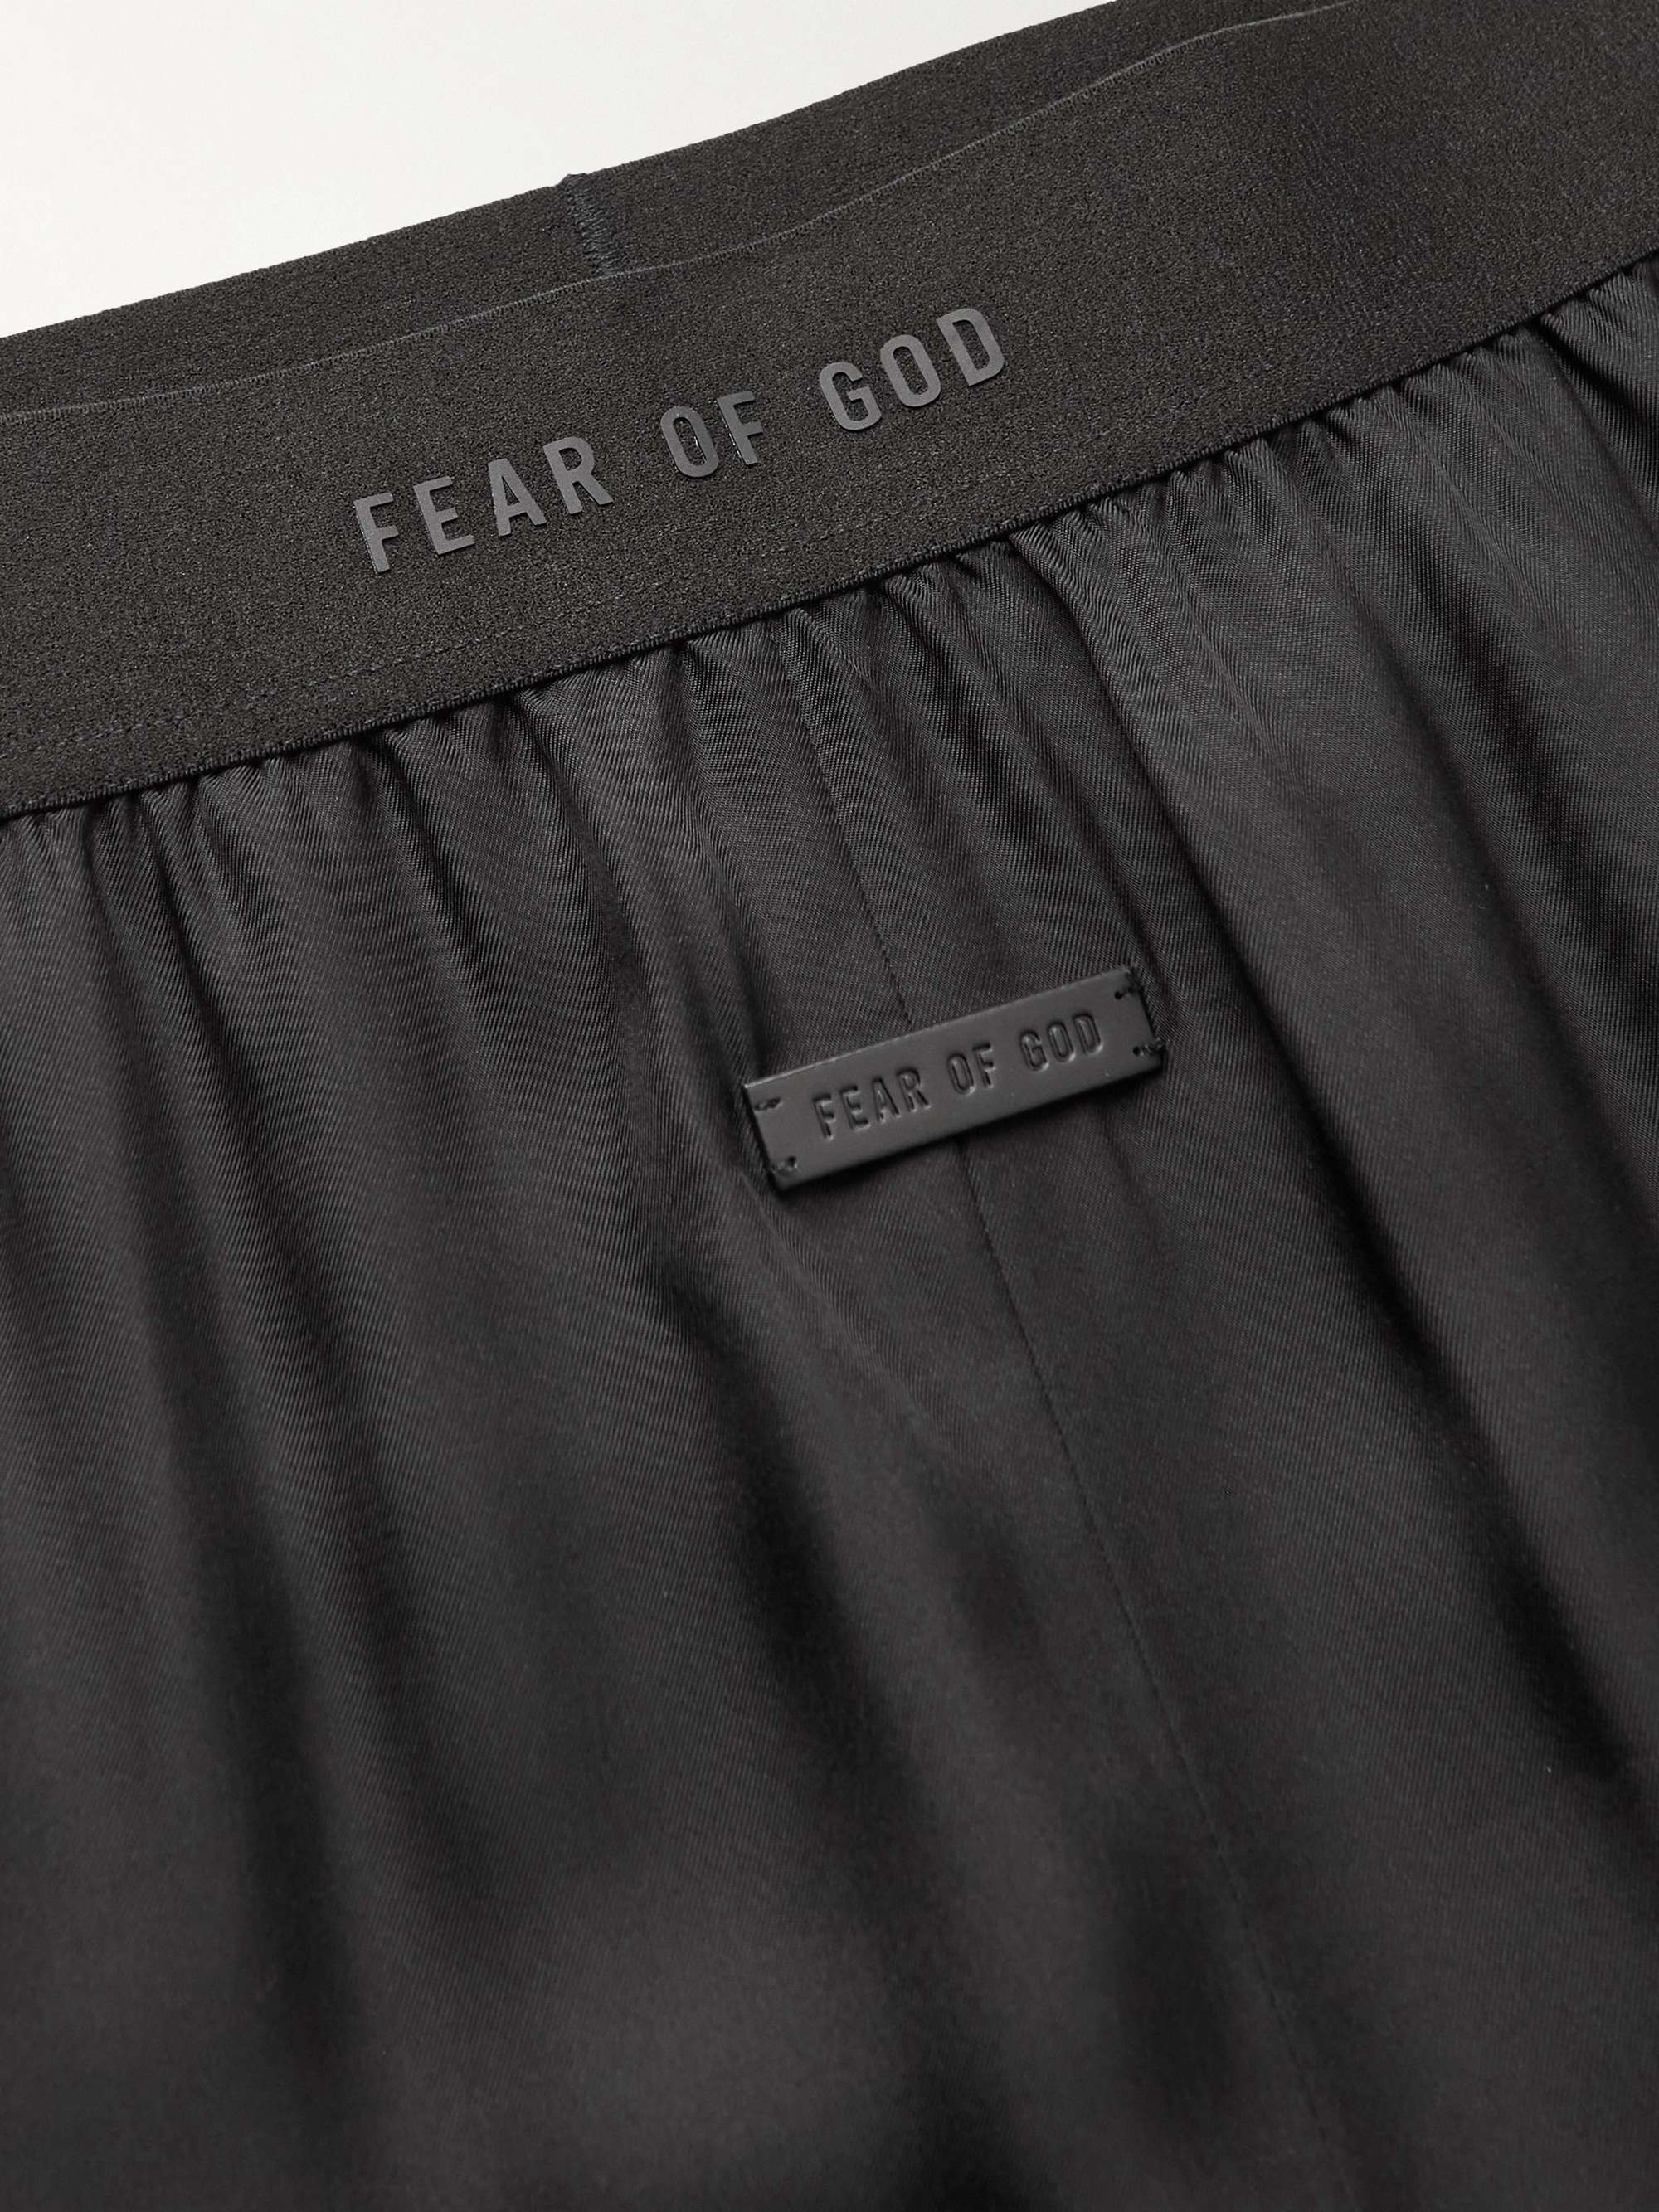 FEAR OF GOD Satin-Twill Pyjama Trousers